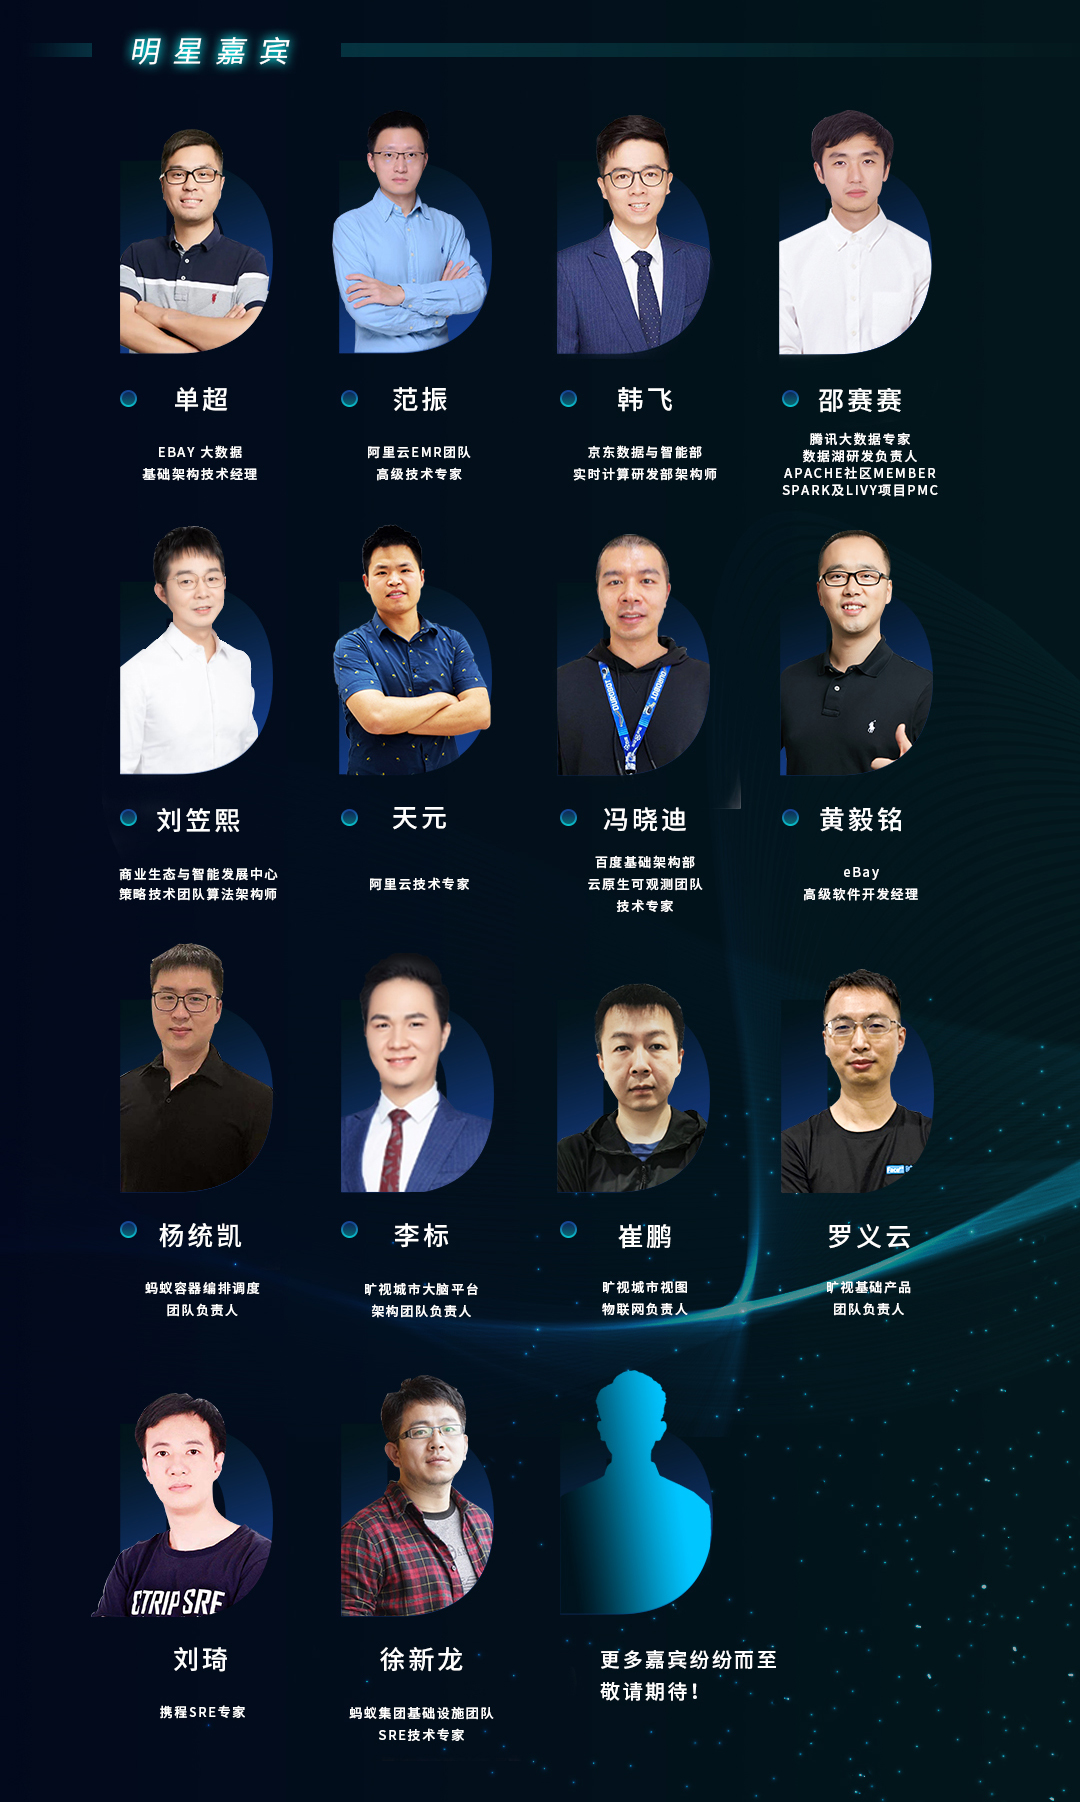 2021 CSDI SUMMIT中国软件研发管理行业技术峰会_门票优惠_活动家官网报名